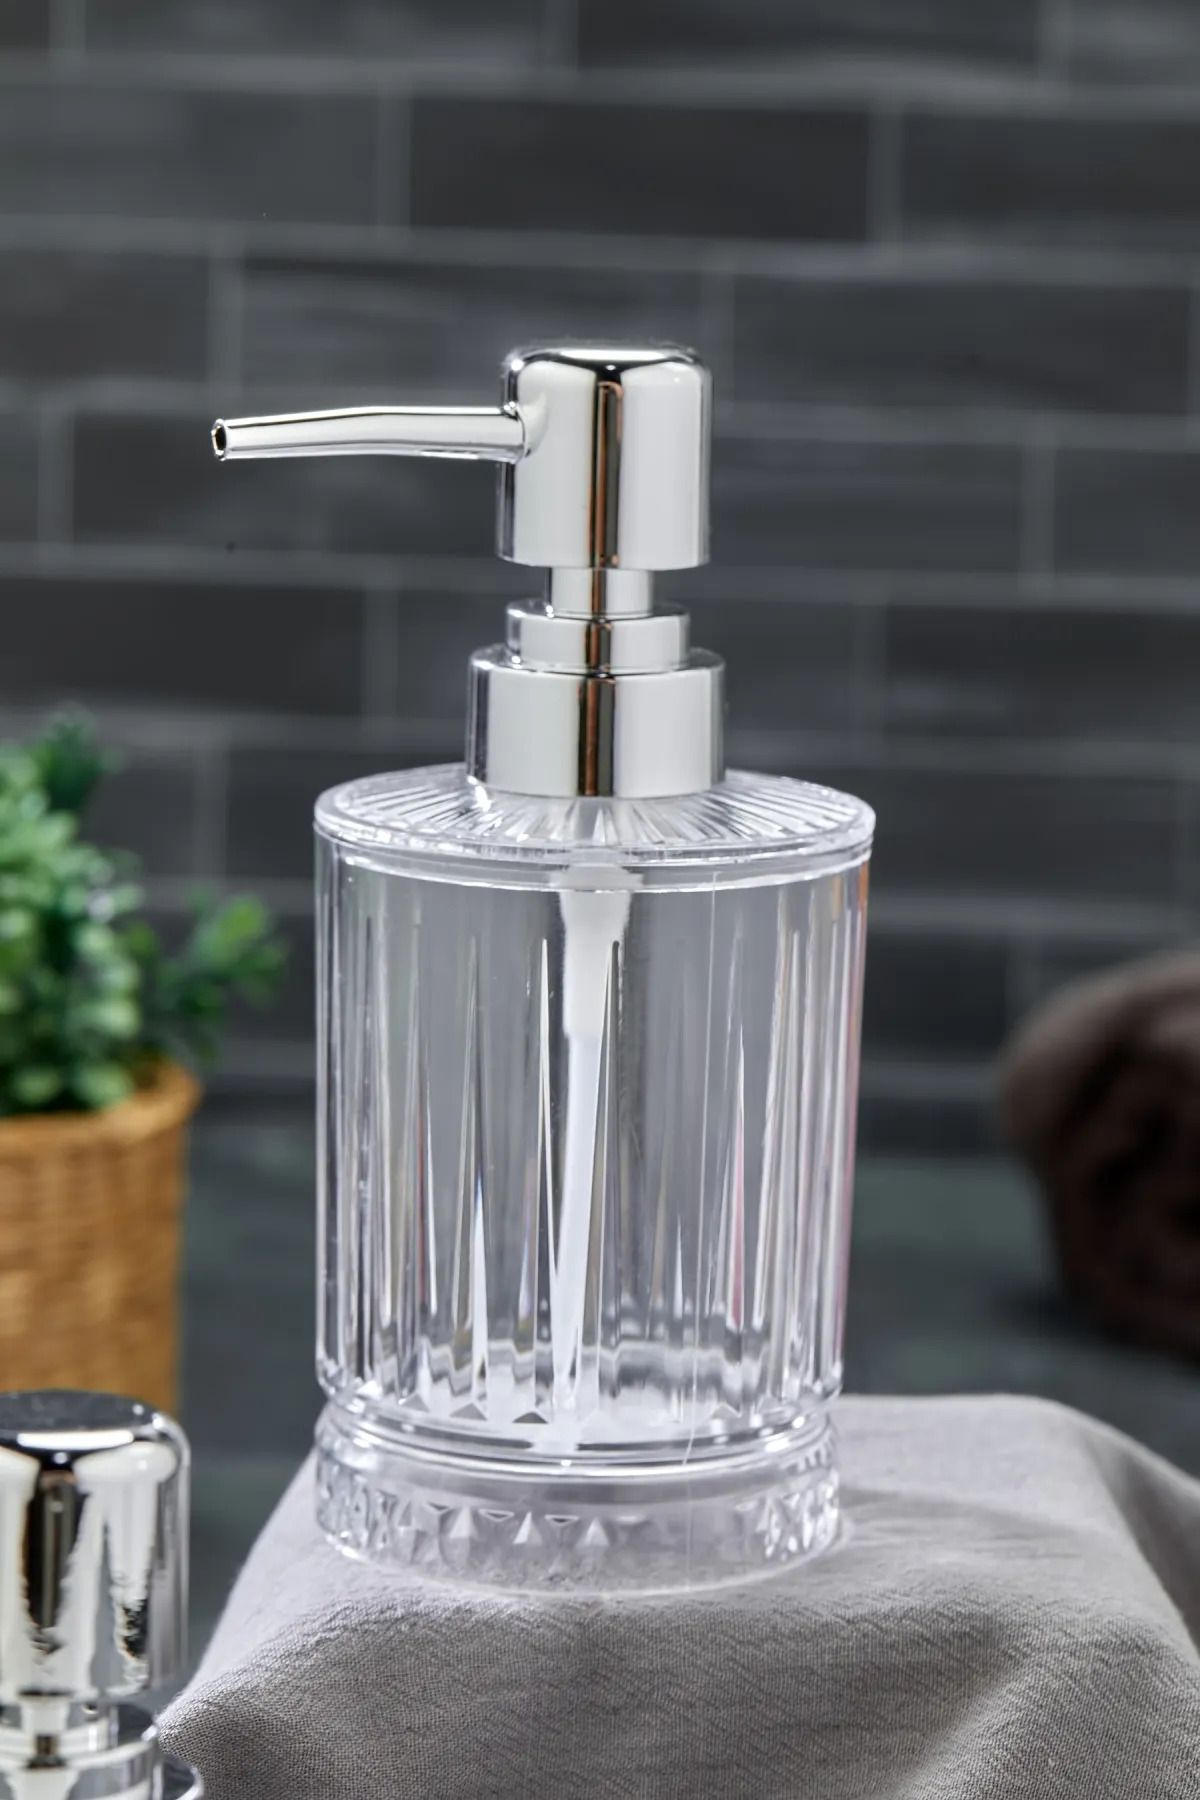 B.A.Y.NUVOLA Banyo Mutfak Akrilik Sıvı Sabunluk - Dekoratif Deterjan Sabunluk Cam Değildir 250 ml